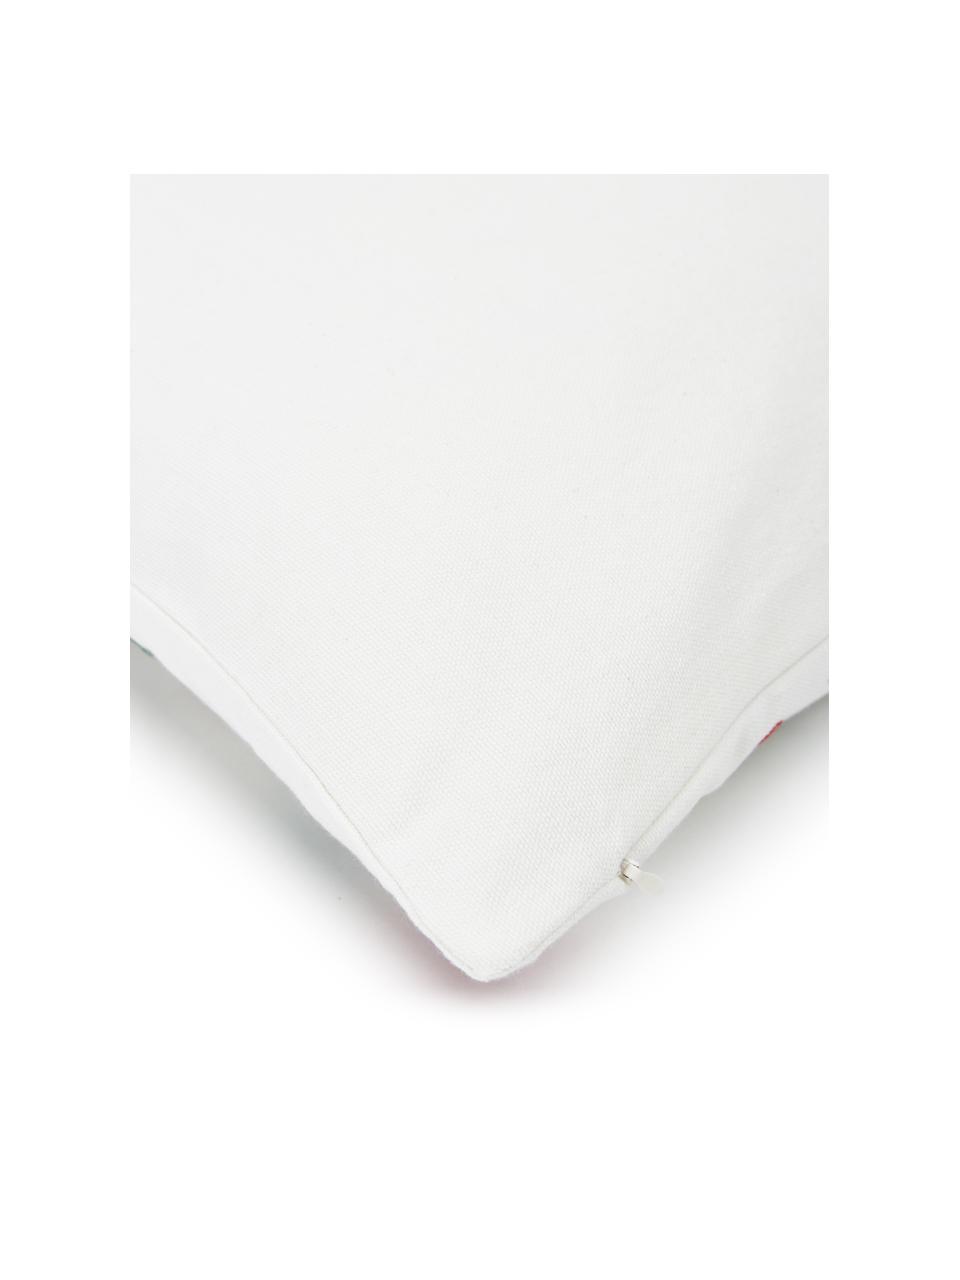 Bestickte Kissenhülle Folka mit buntem Muster aus Baumwolle, 100% Baumwolle, Bunt, B 45 x L 45 cm